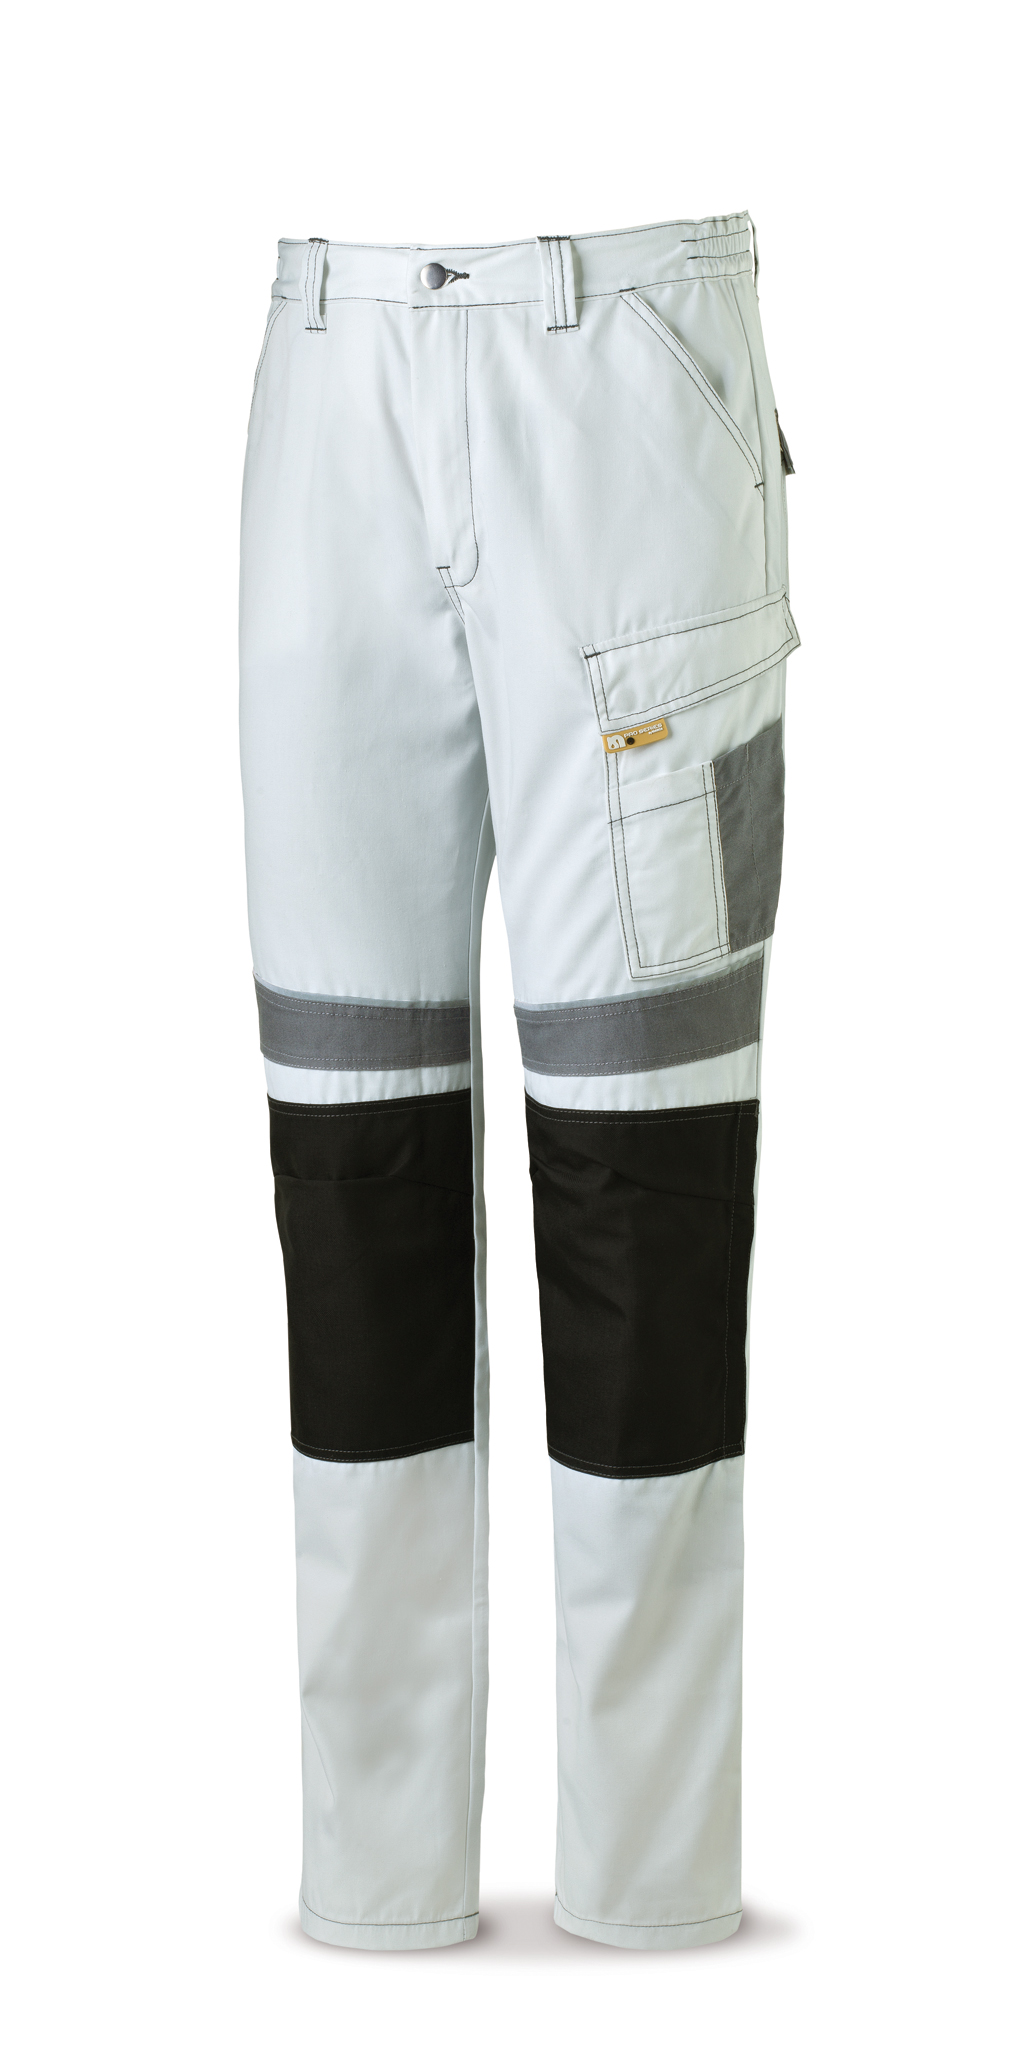 588-PBG Vetements de travail laboral Pro Series Pantalon toile tergal 245 g. Coloris blanc/gris